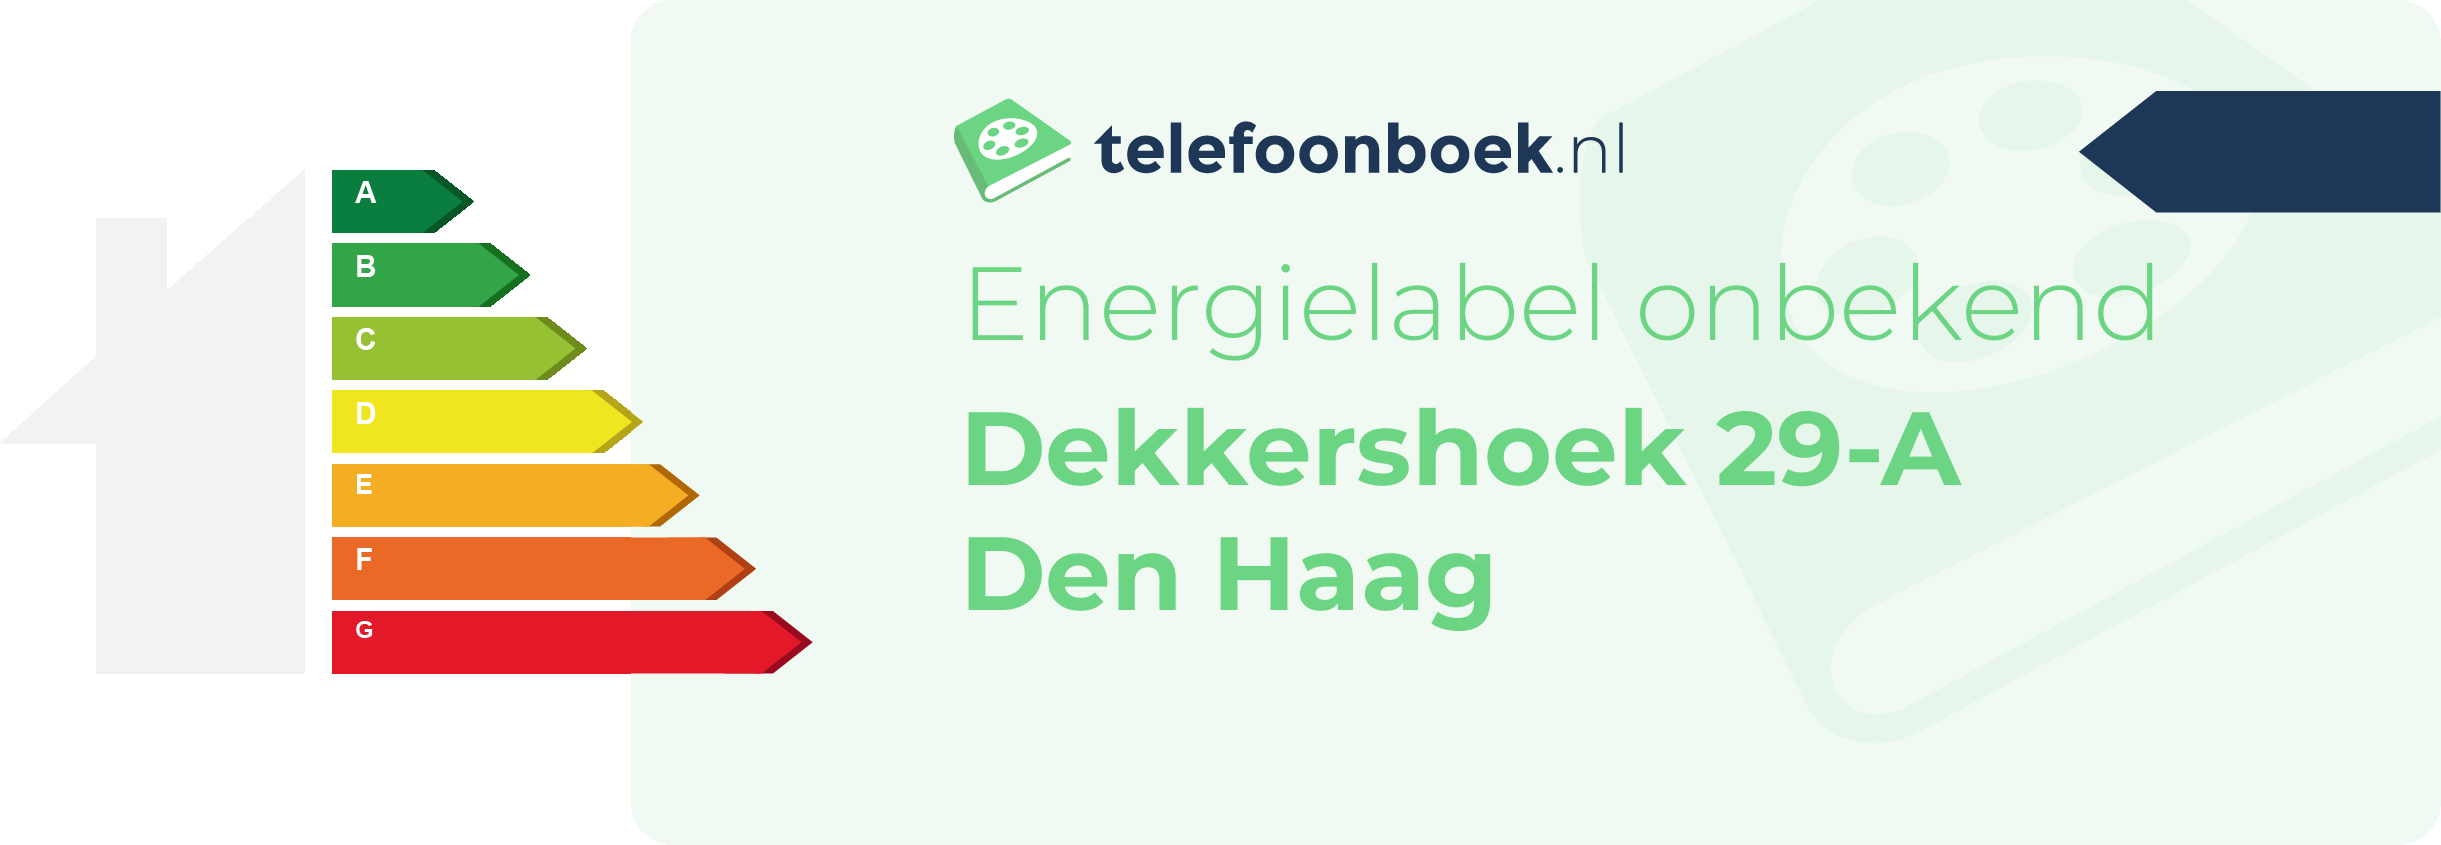 Energielabel Dekkershoek 29-A Den Haag